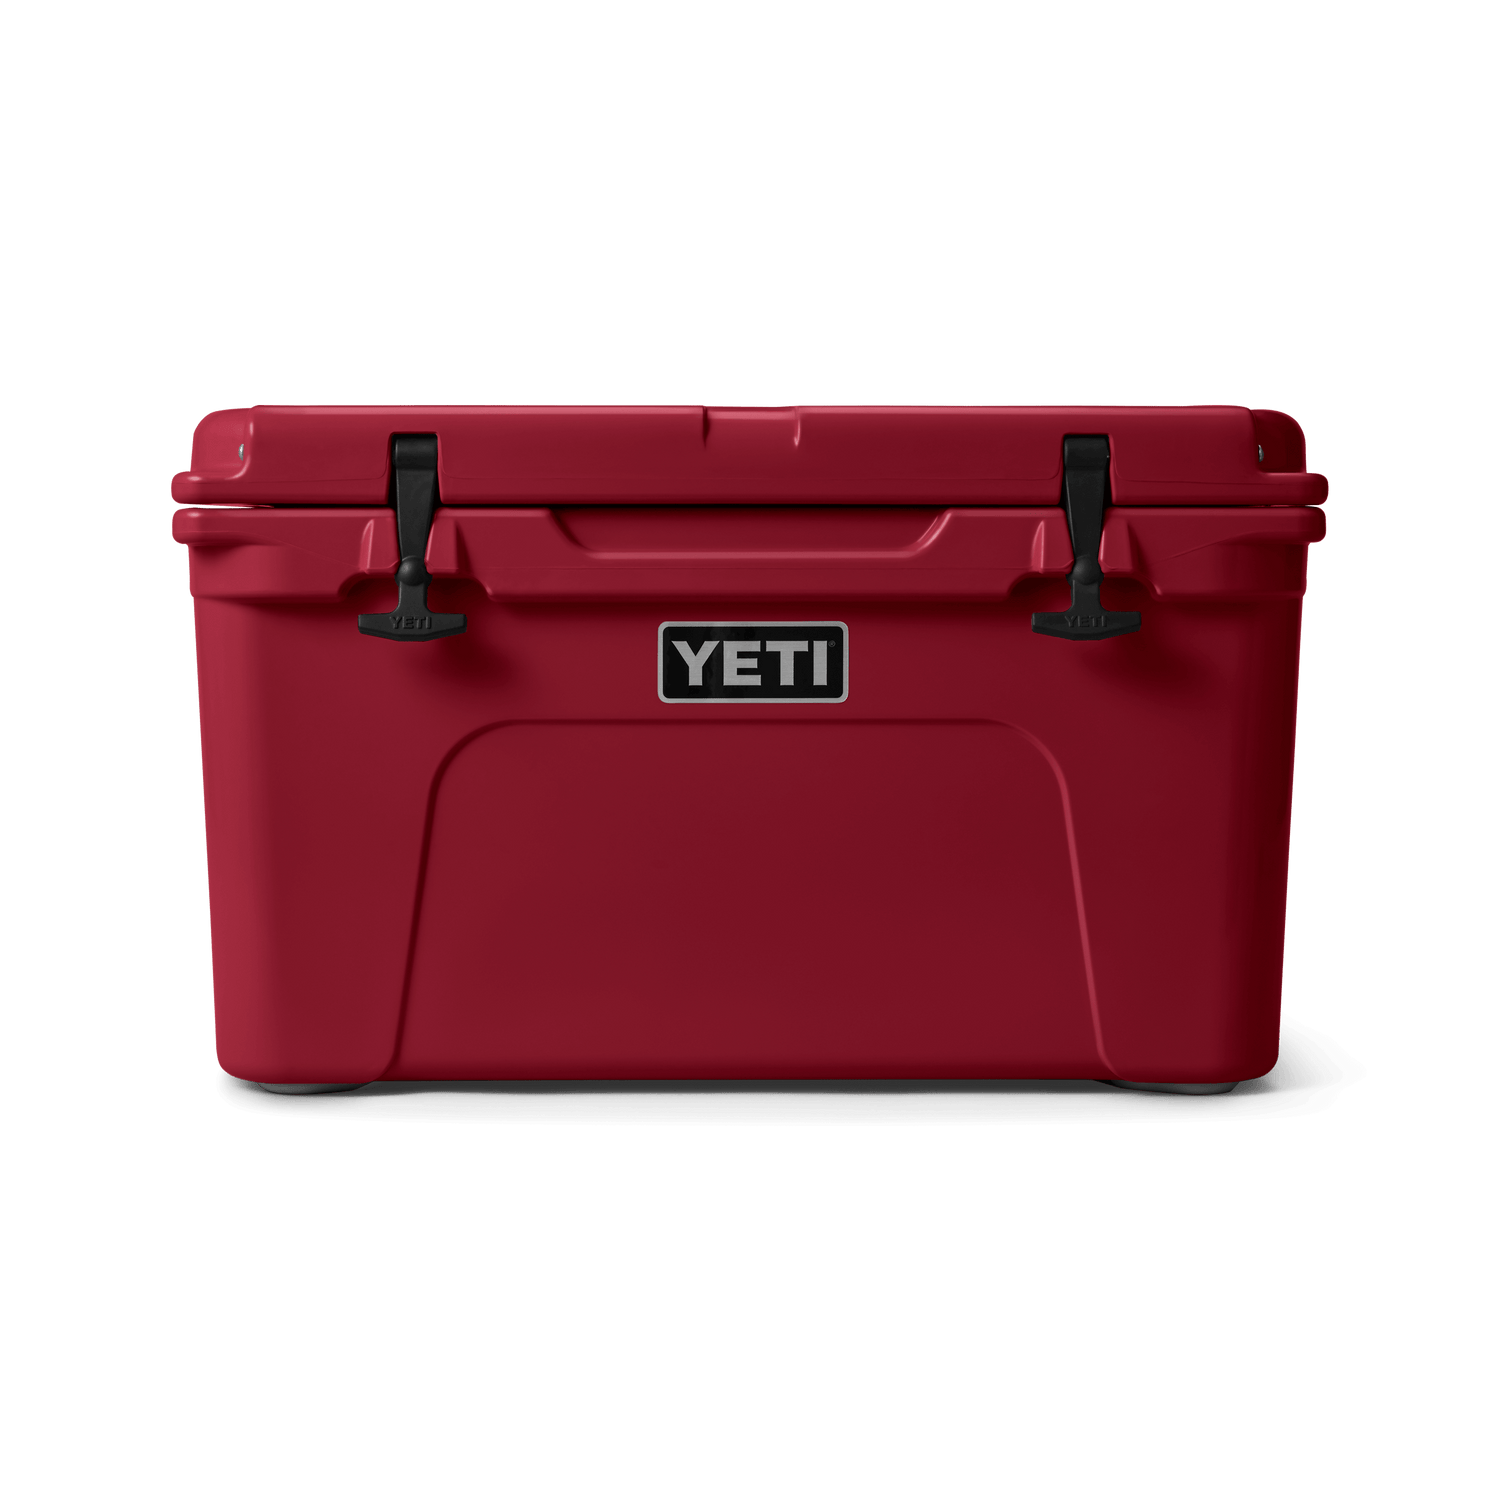 YETI® Tundra 35 Cool Box – YETI EUROPE